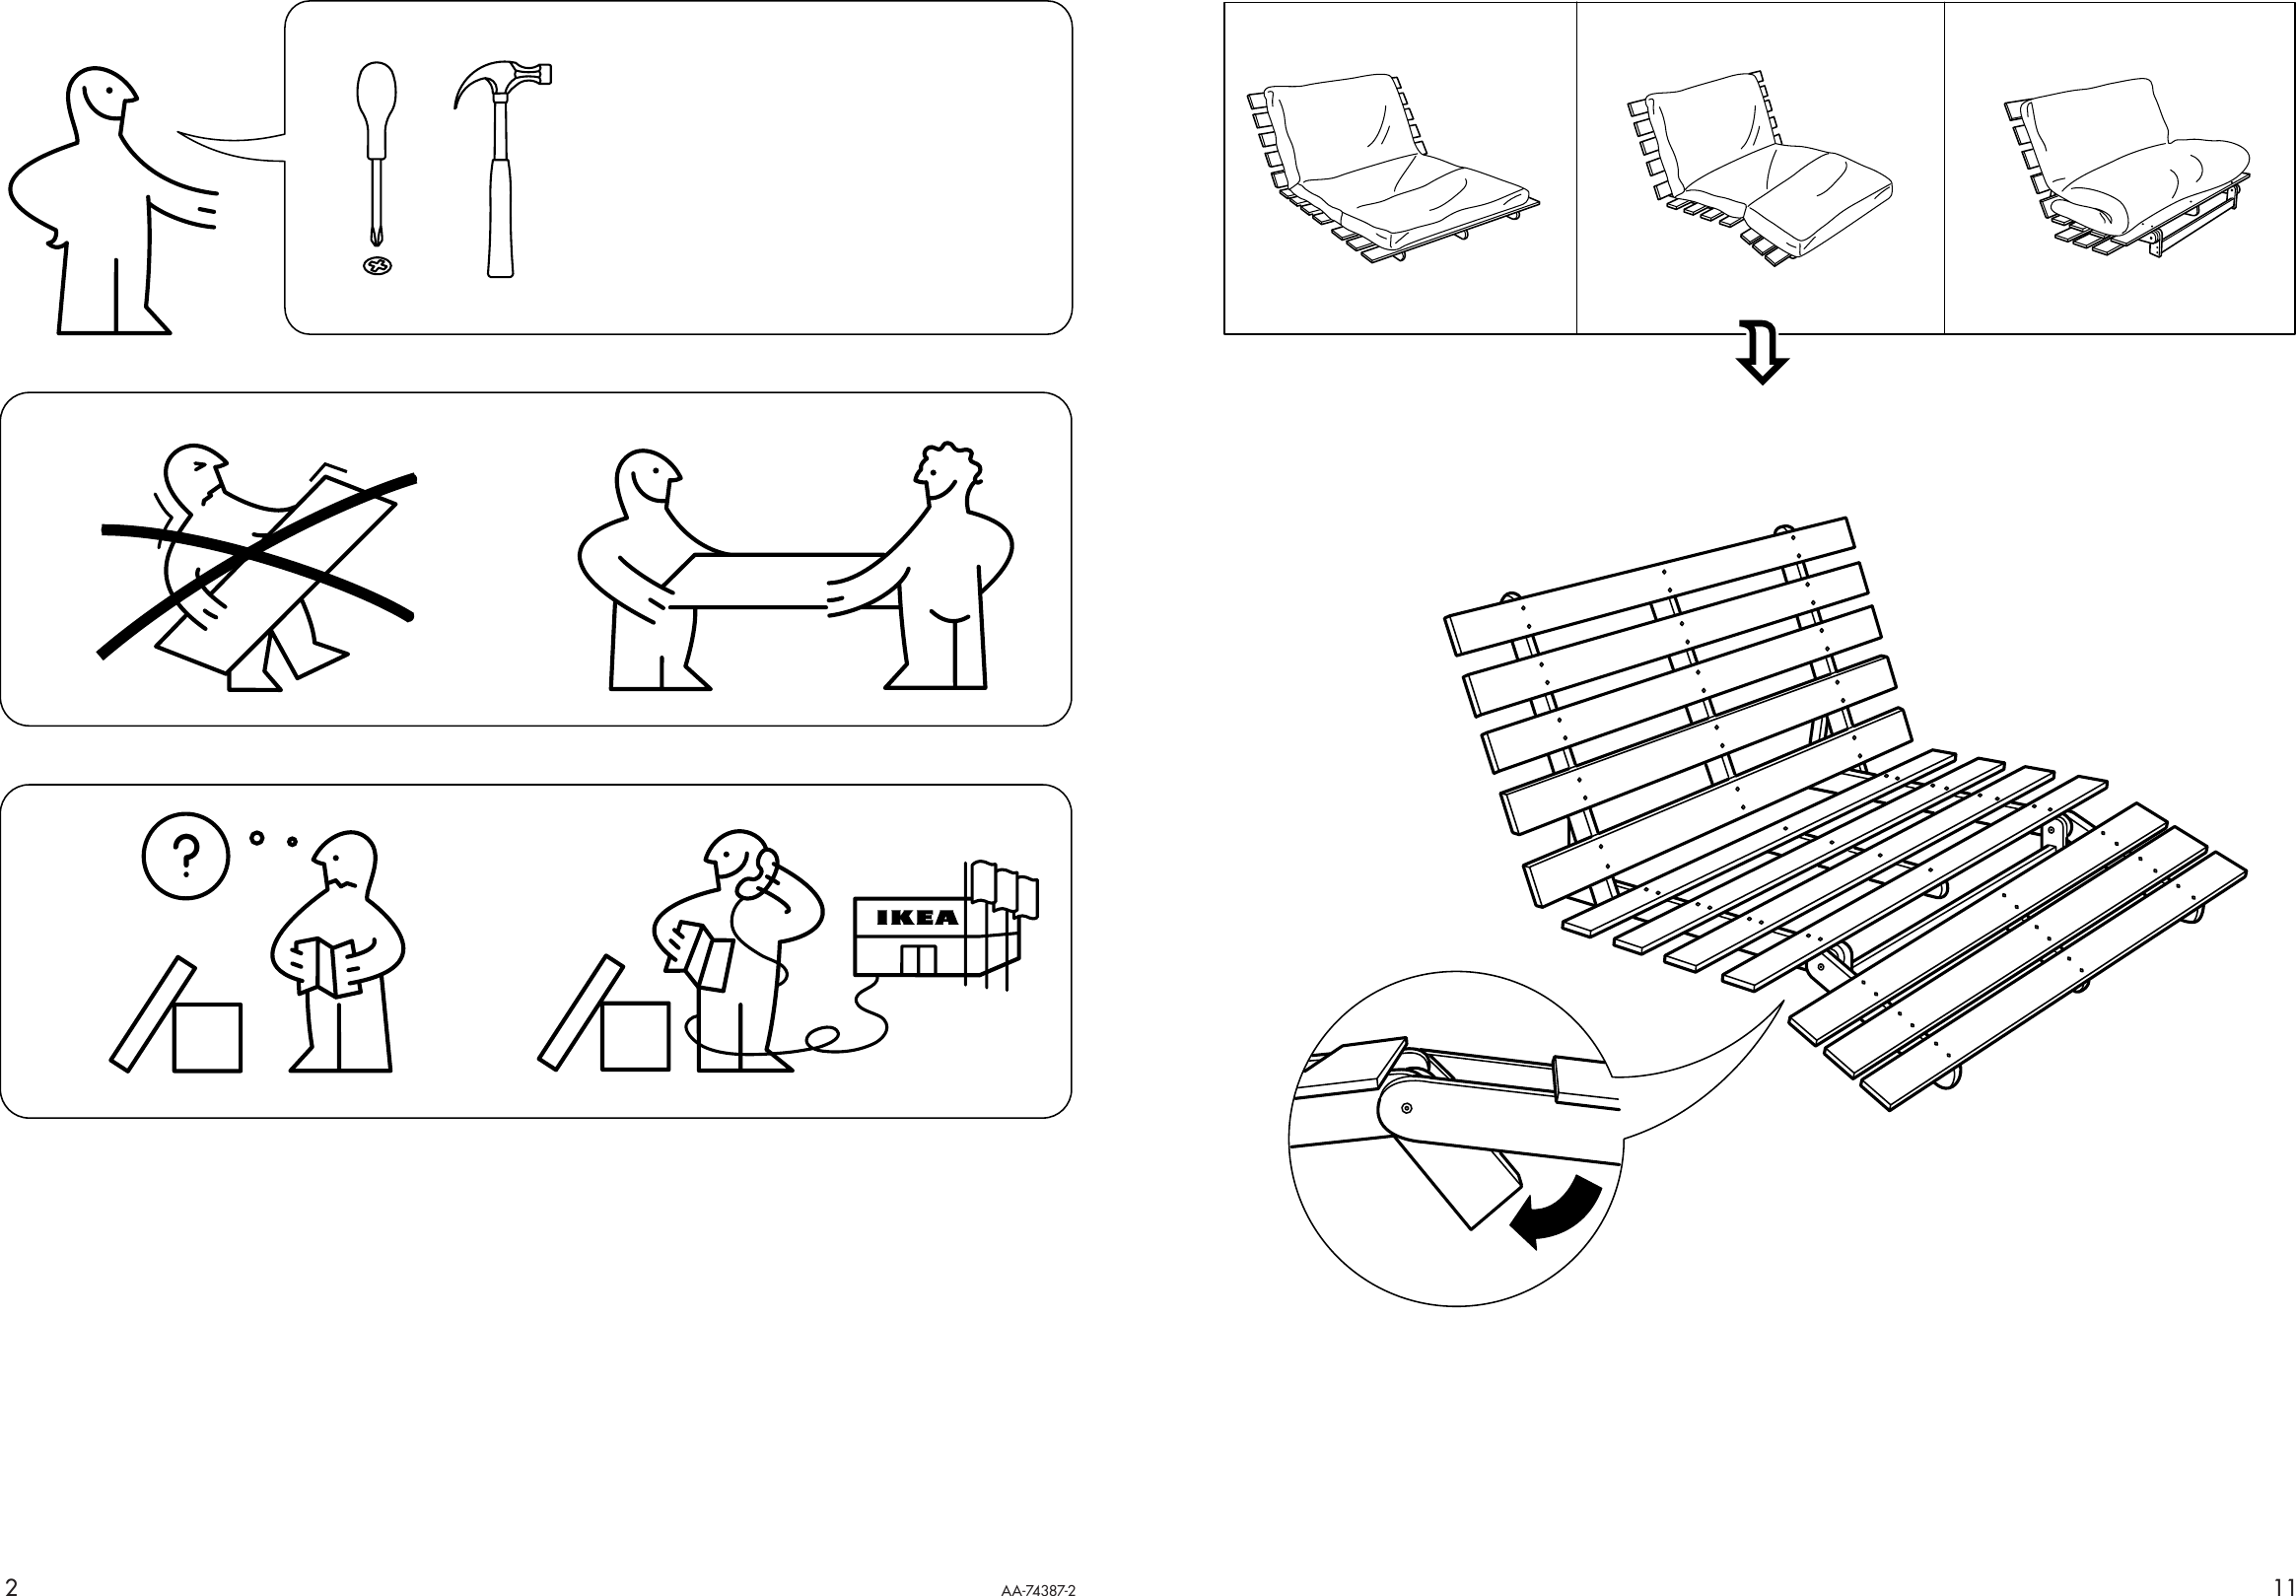 Page 2 of 6 - Ikea Ikea-Grankulla-Futon-Sofa-Frame-55X43X32-Assembly-Instruction-2  Ikea-grankulla-futon-sofa-frame-55x43x32-assembly-instruction